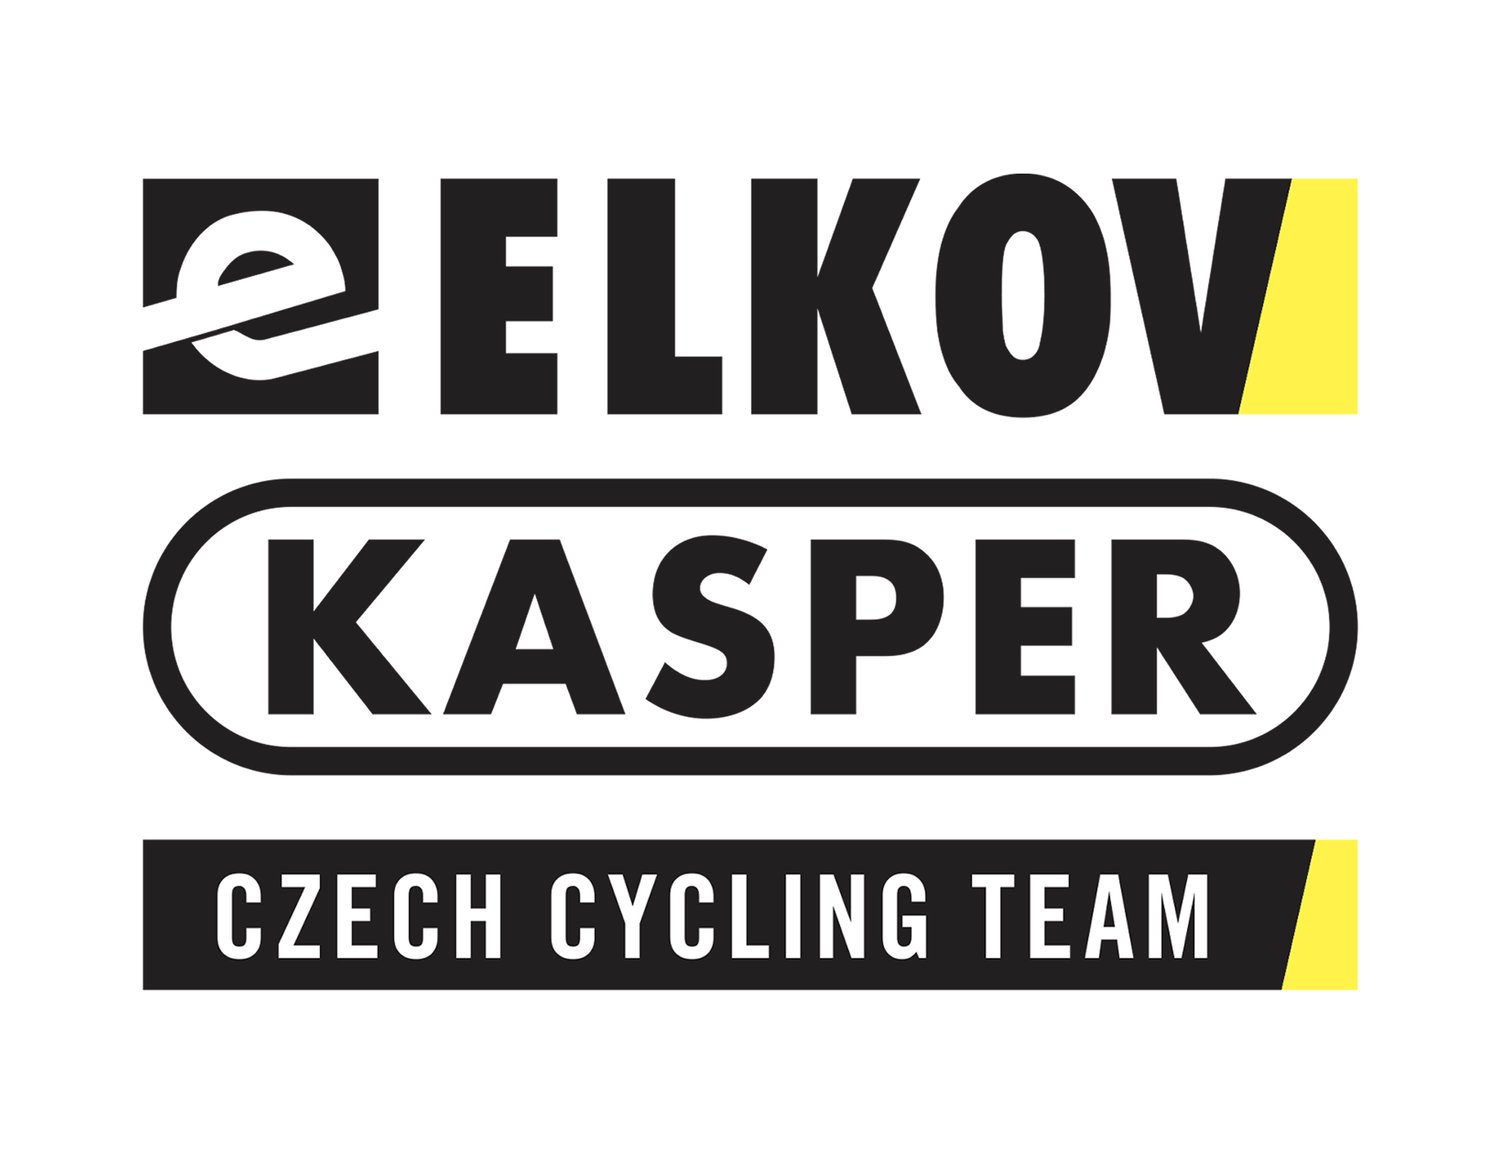 Elkov Kasper